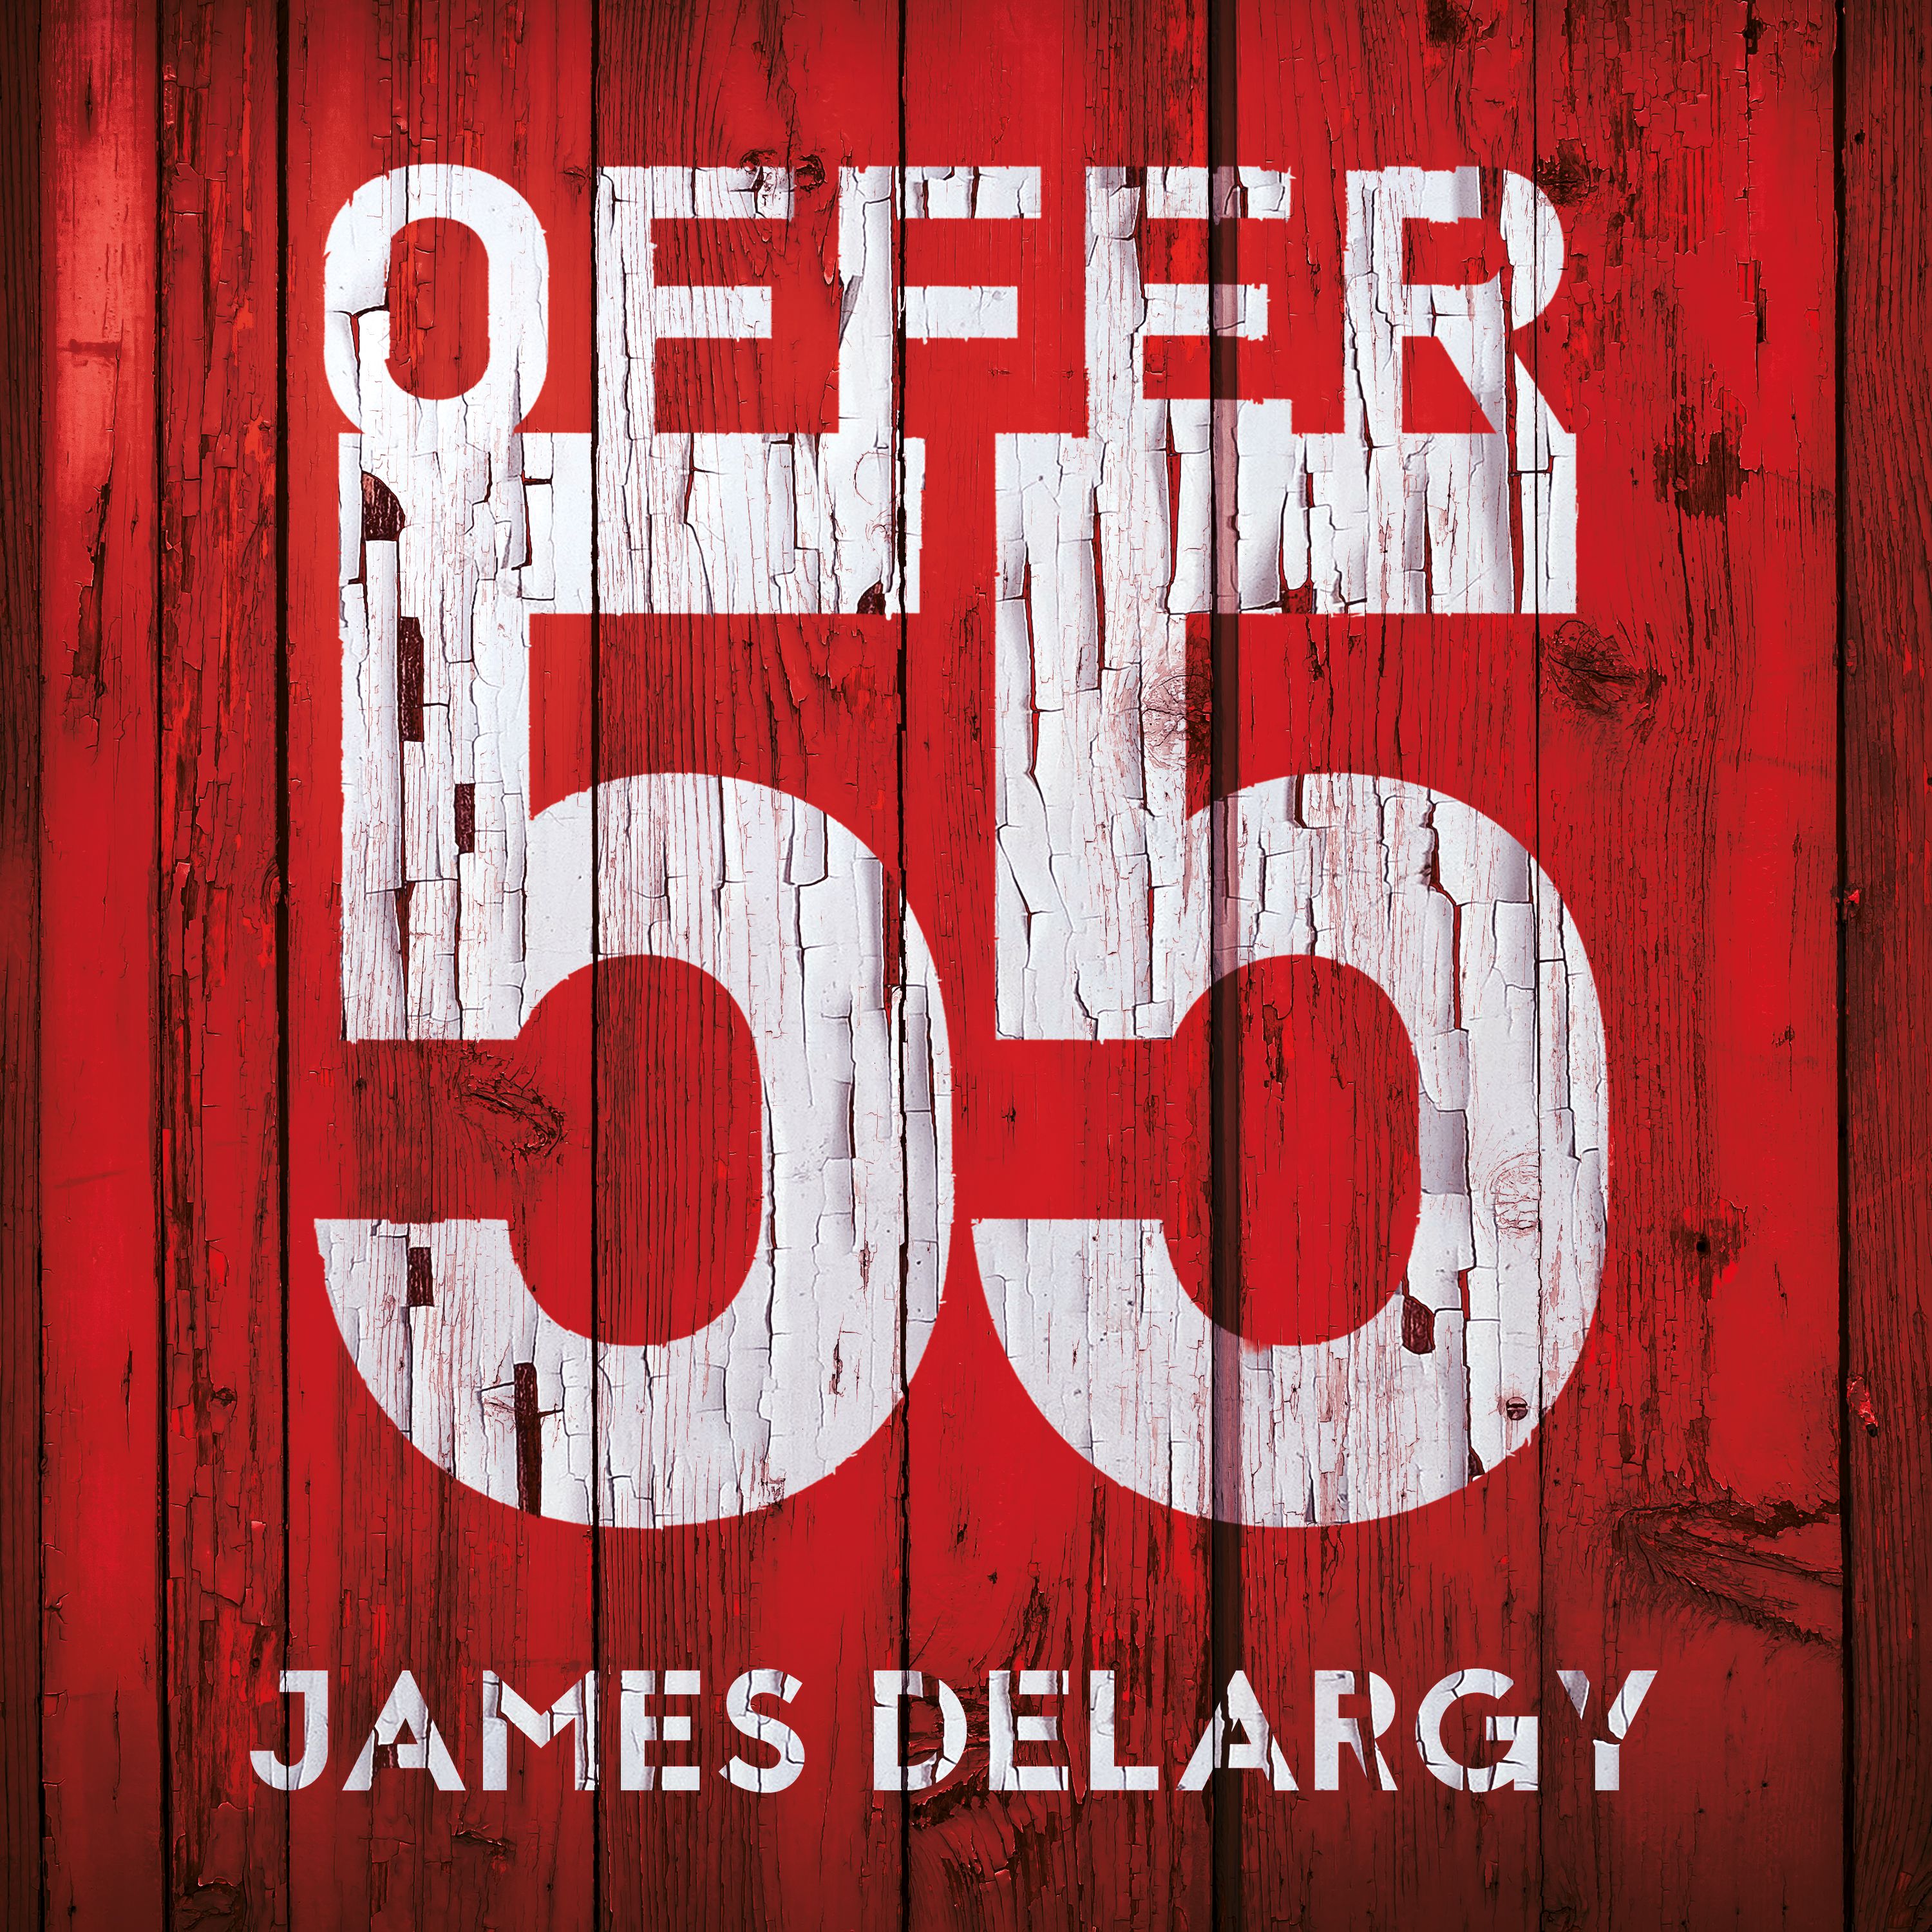 Offer 55, ljudbok av James Delargy